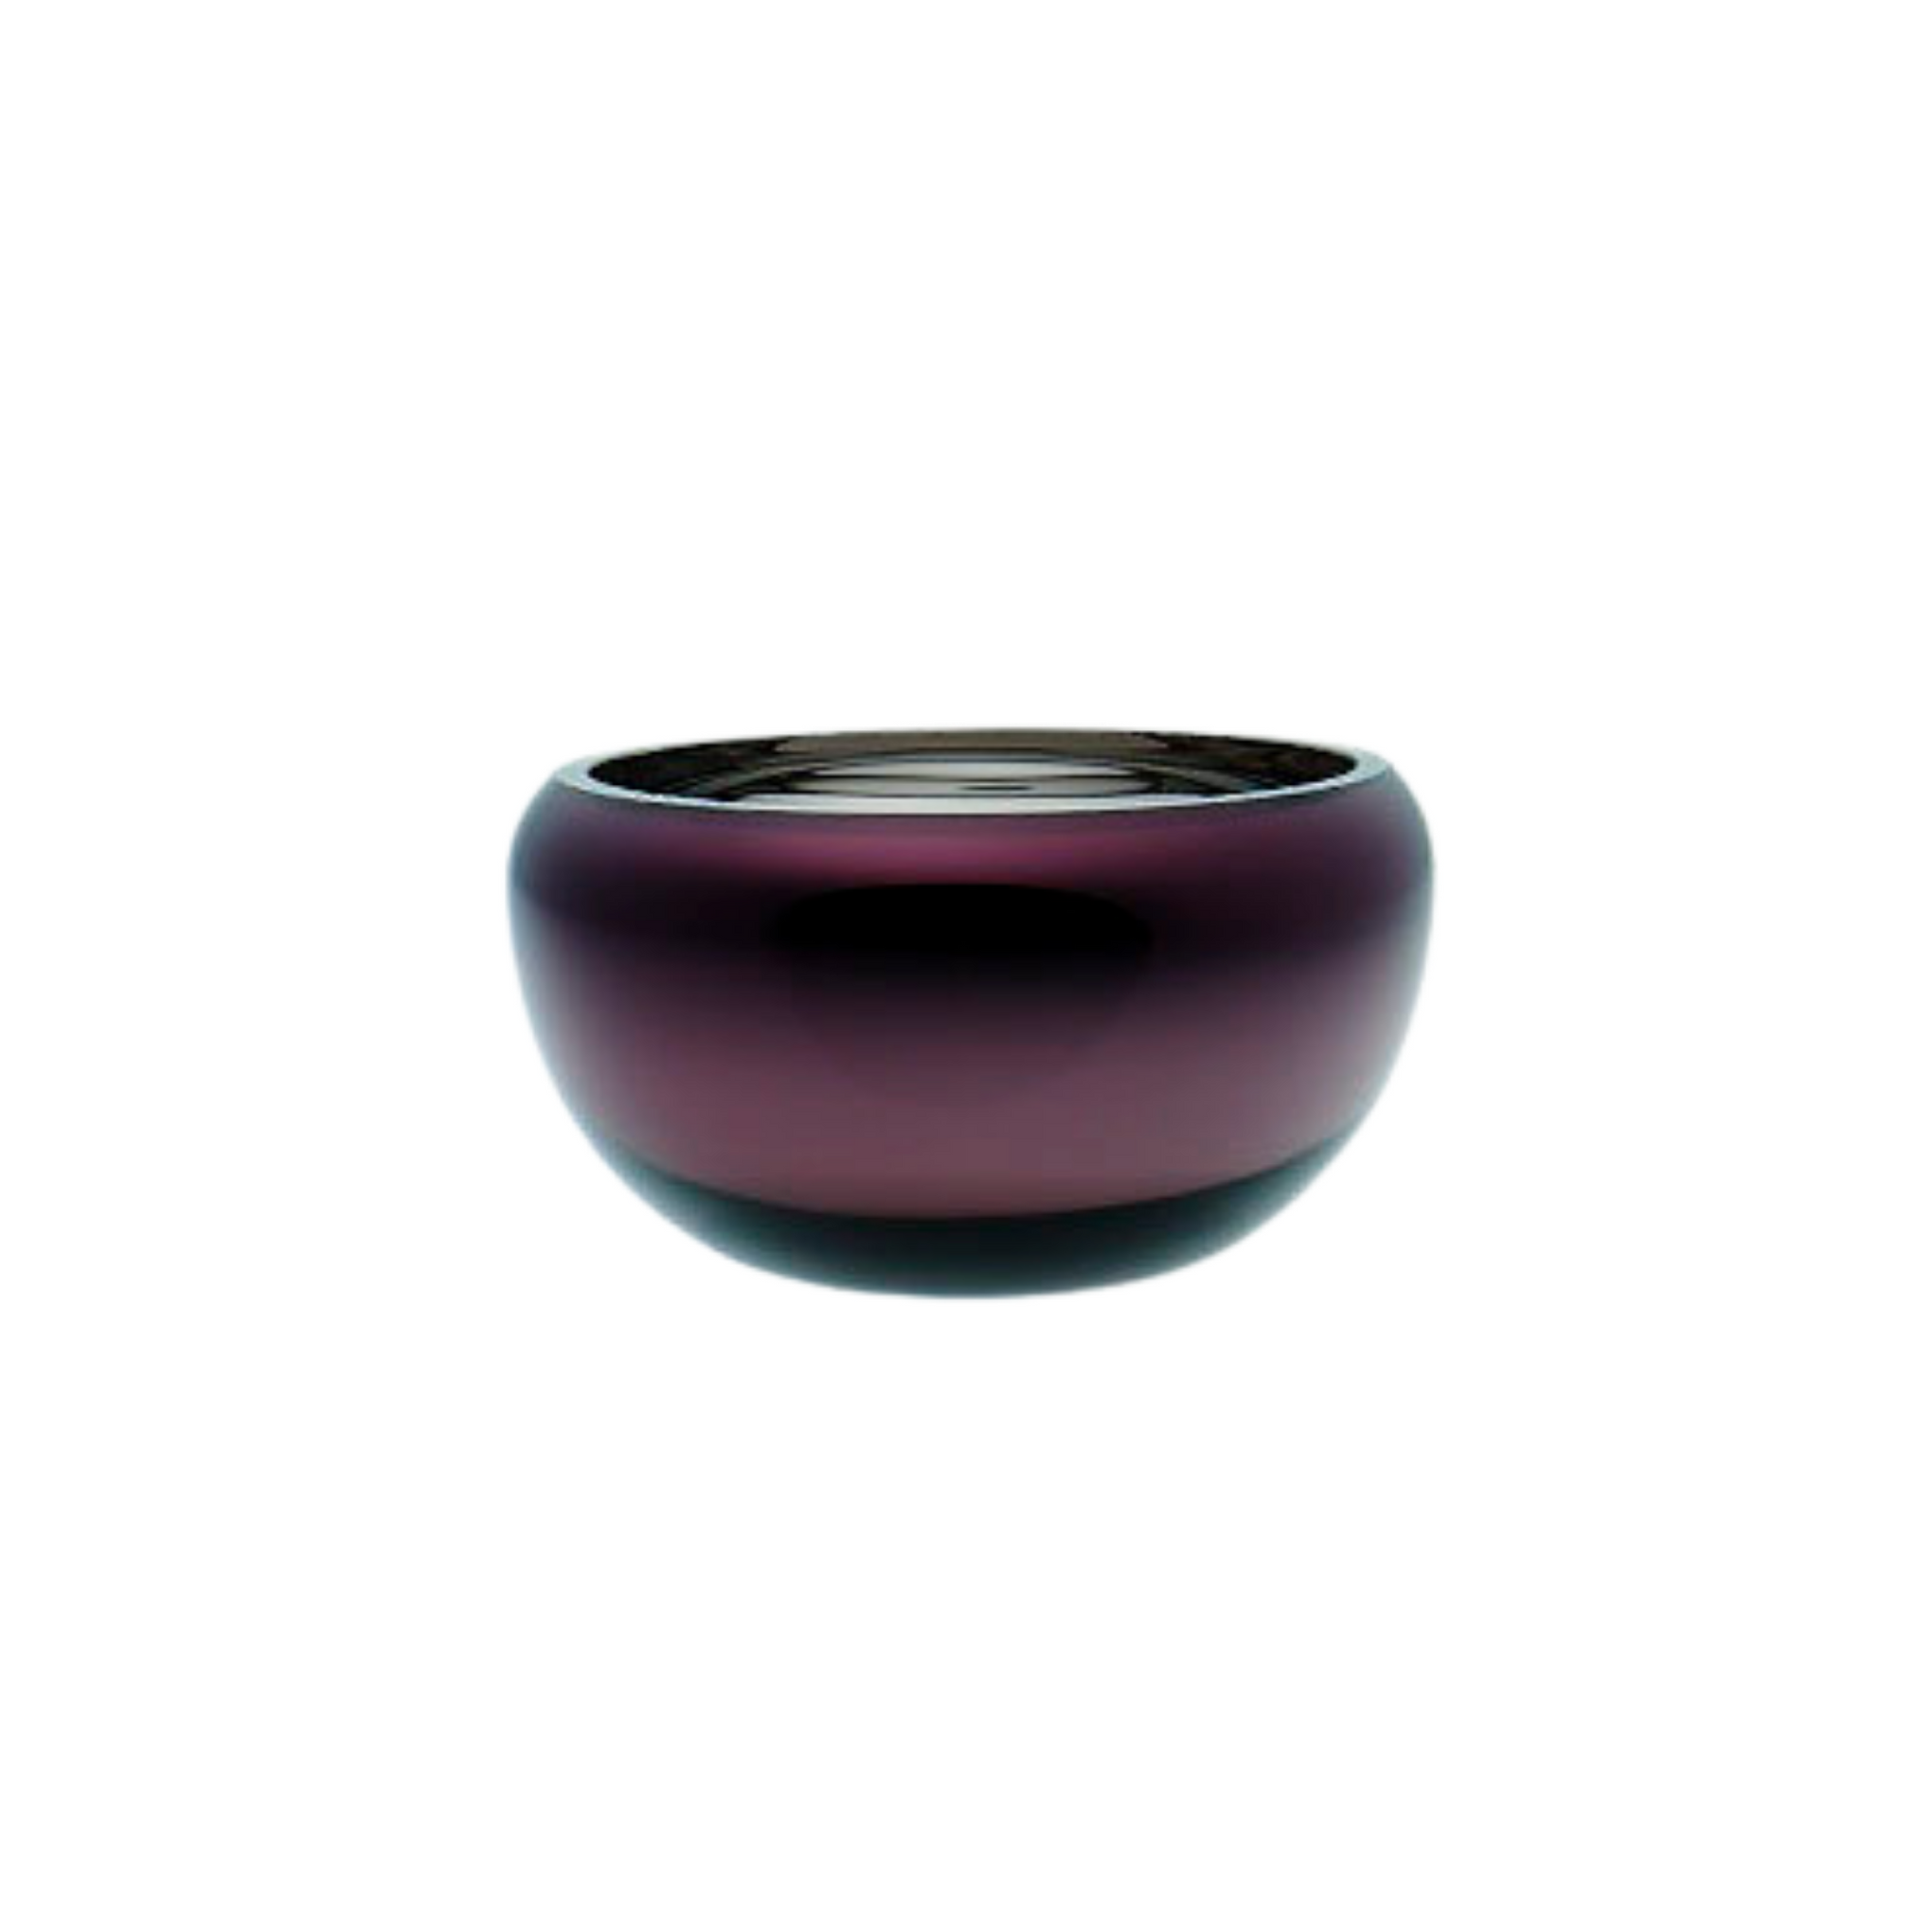 Glass bowl aubergine decor homewares